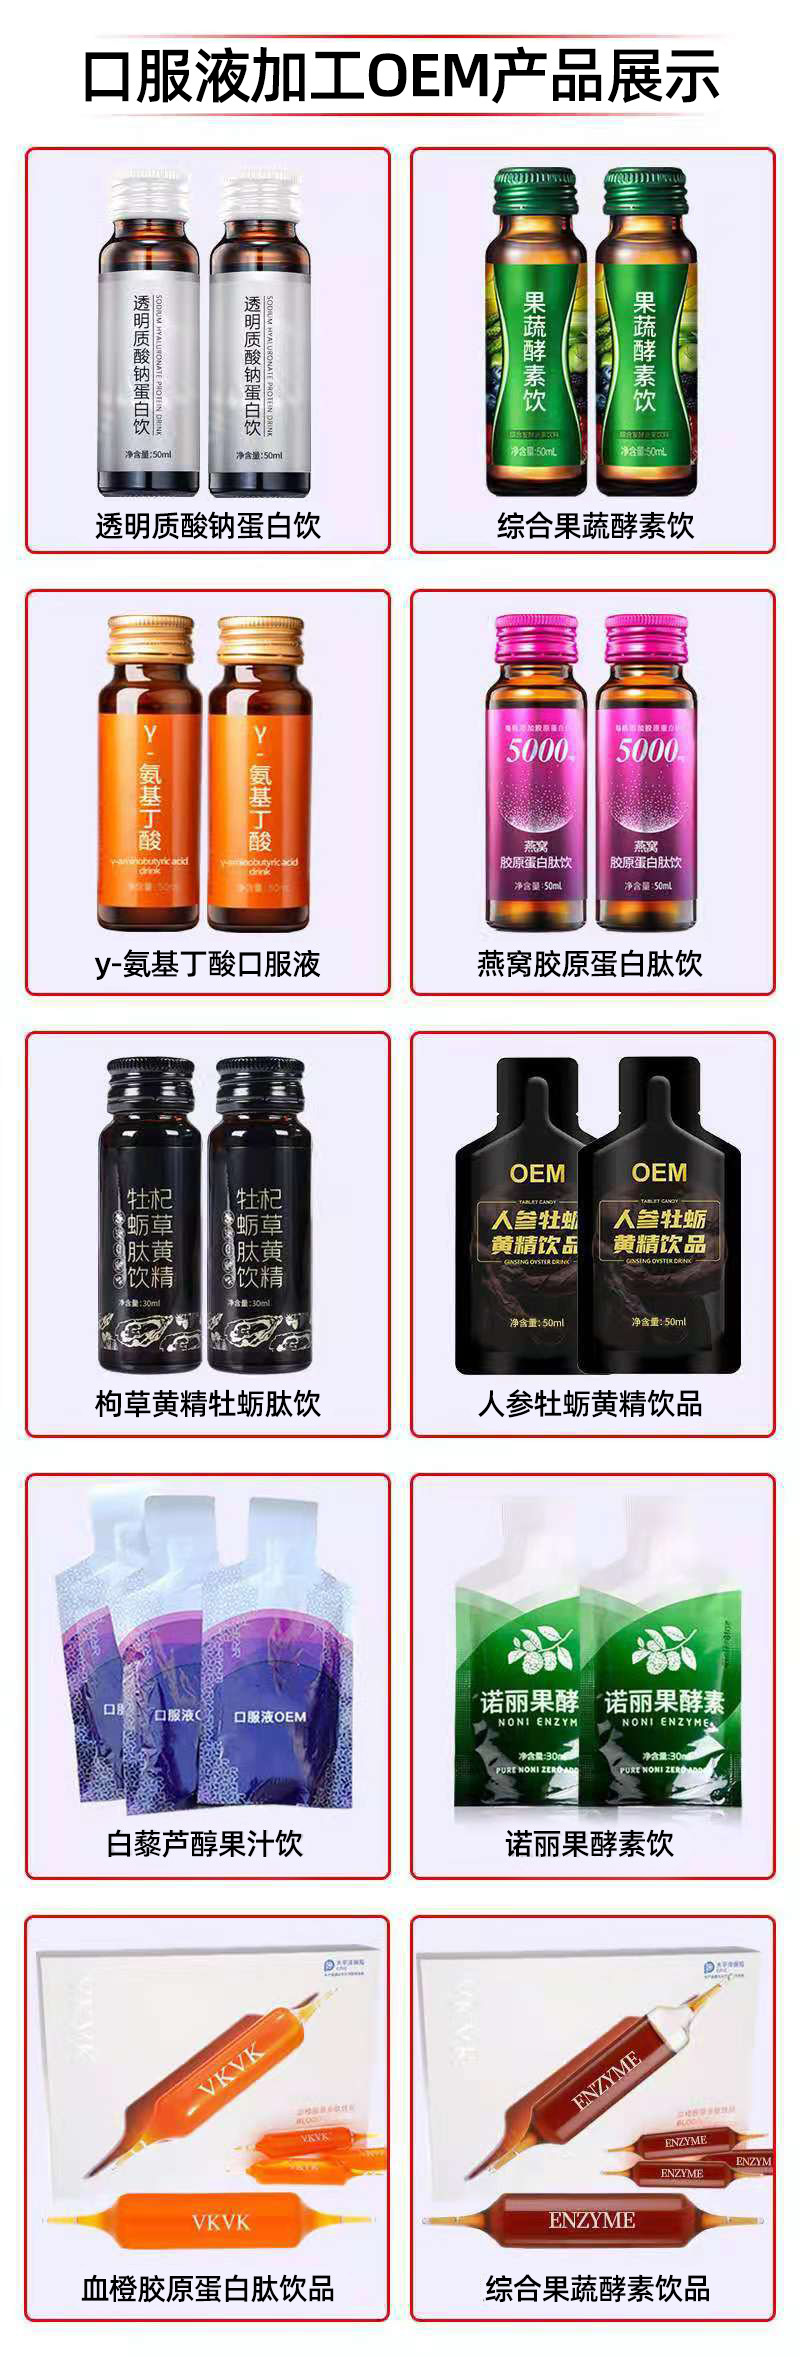 黄精枸杞红参饮品代加工厂家推荐广州中恒健源生物有限公司